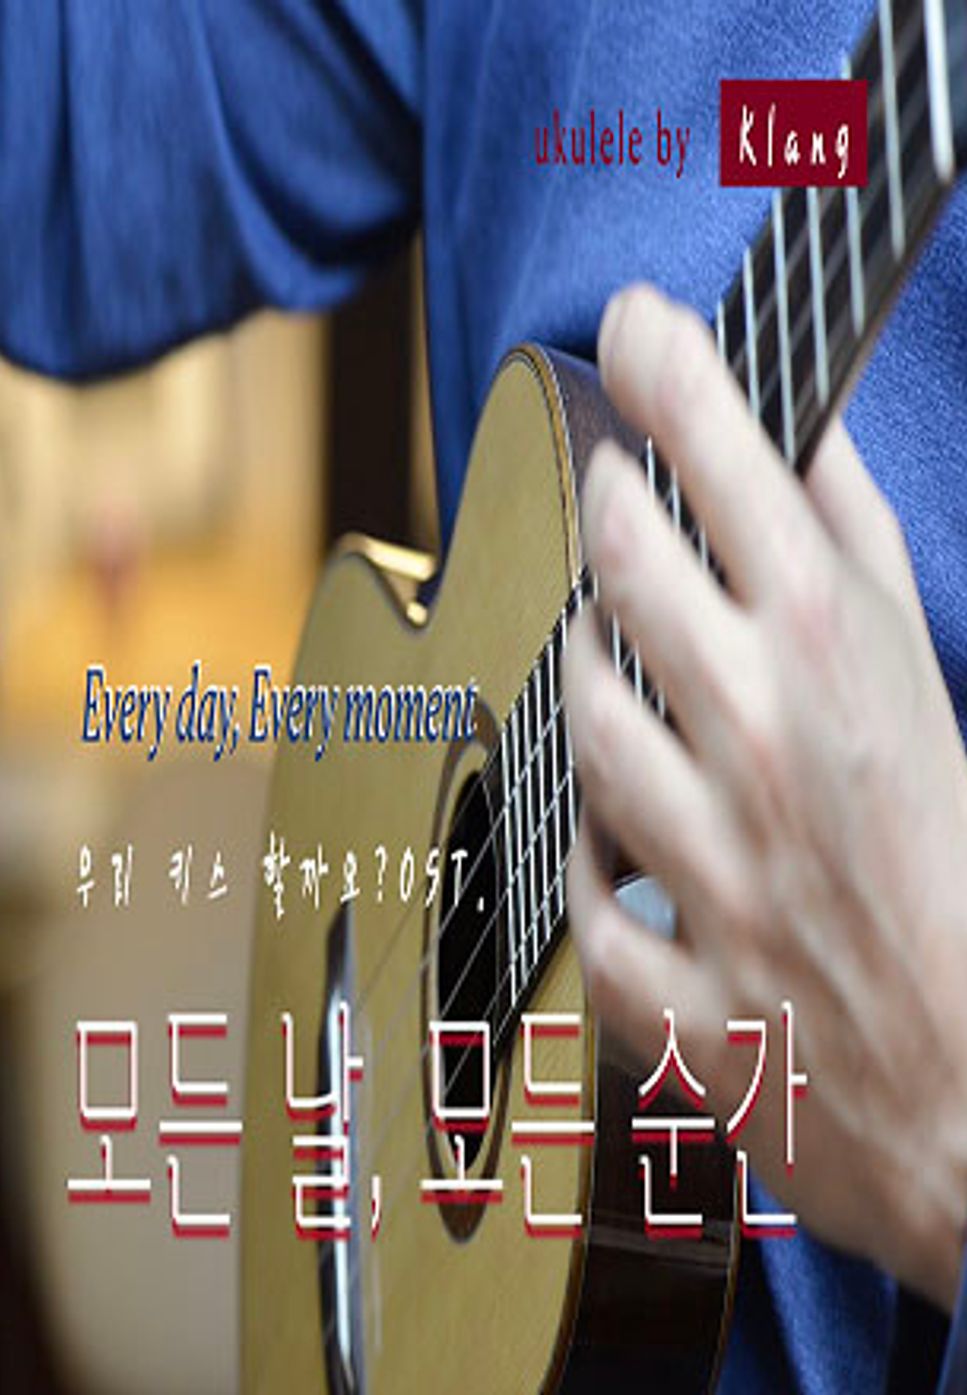 폴킴(paul kim) - 모든 날, 모든 순간(everyday, every moment)/키스 먼저 할까요? OST. (우쿨렐레 솔로연주(ukulele solo cover)) by 클랑(klang)